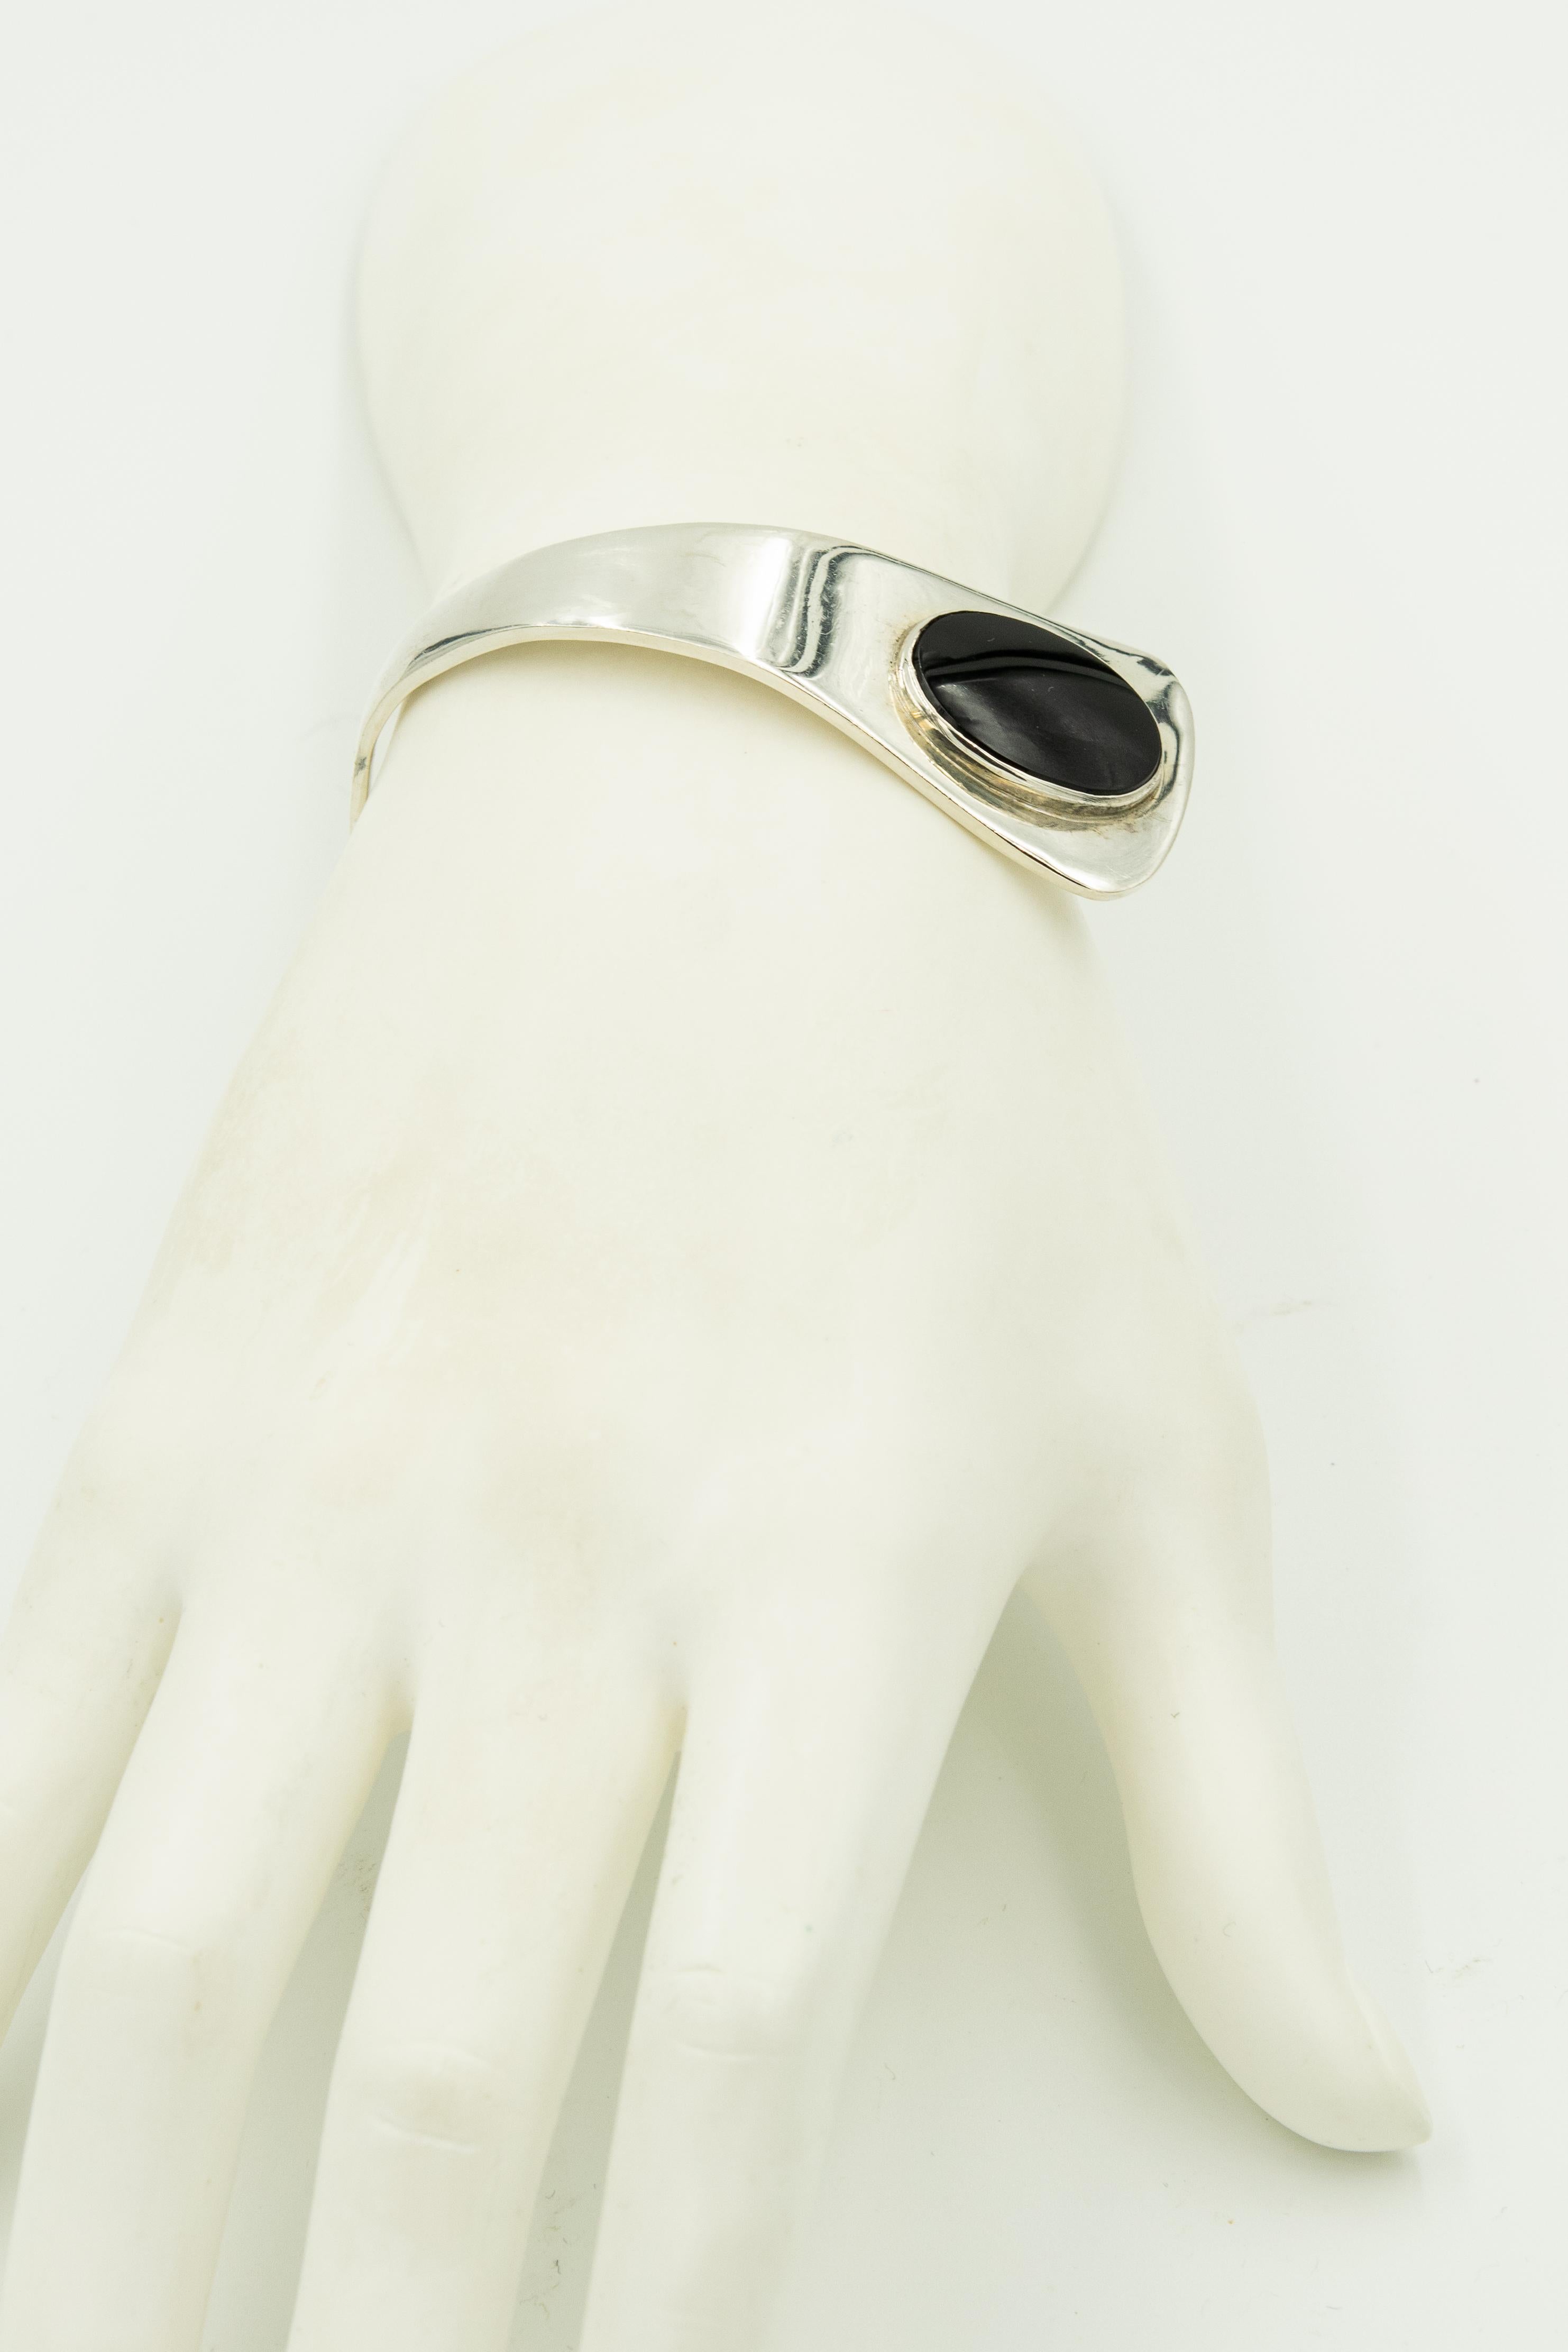 Women's Modernist Danish Onyx Sterling Silver Bracelet by A. Mik and Earrings by NE From